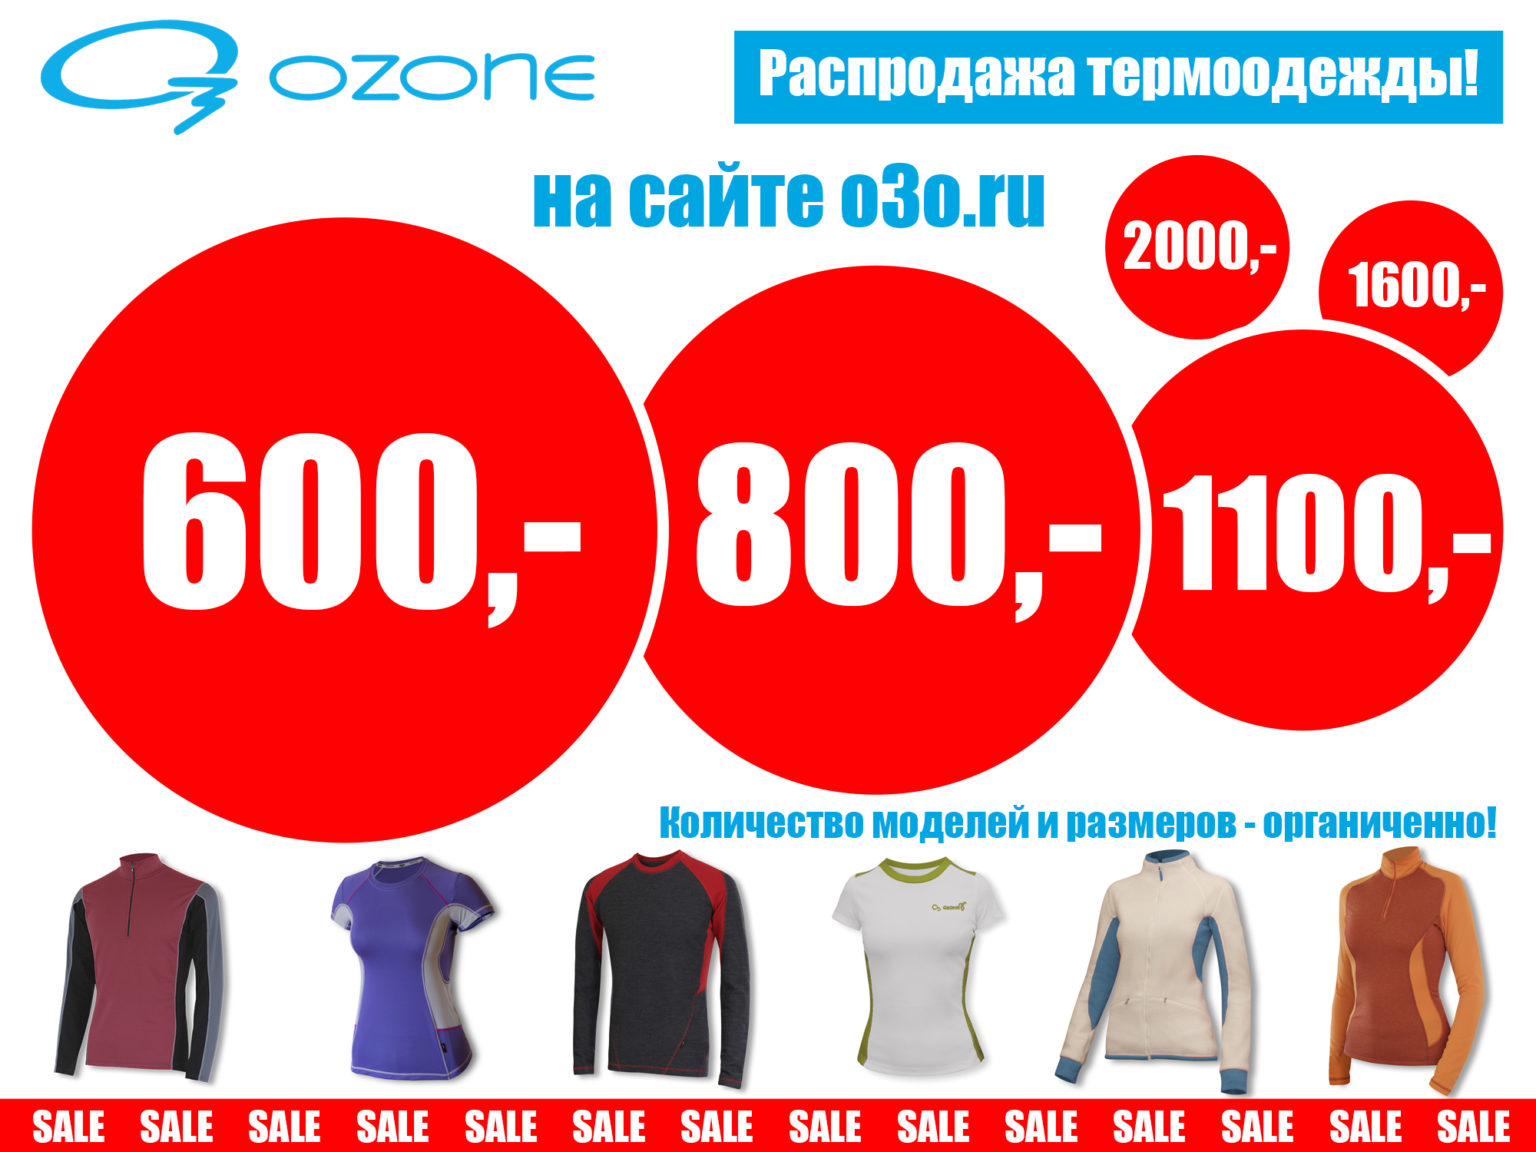 Интернет магазин озон женская одежда распродажа